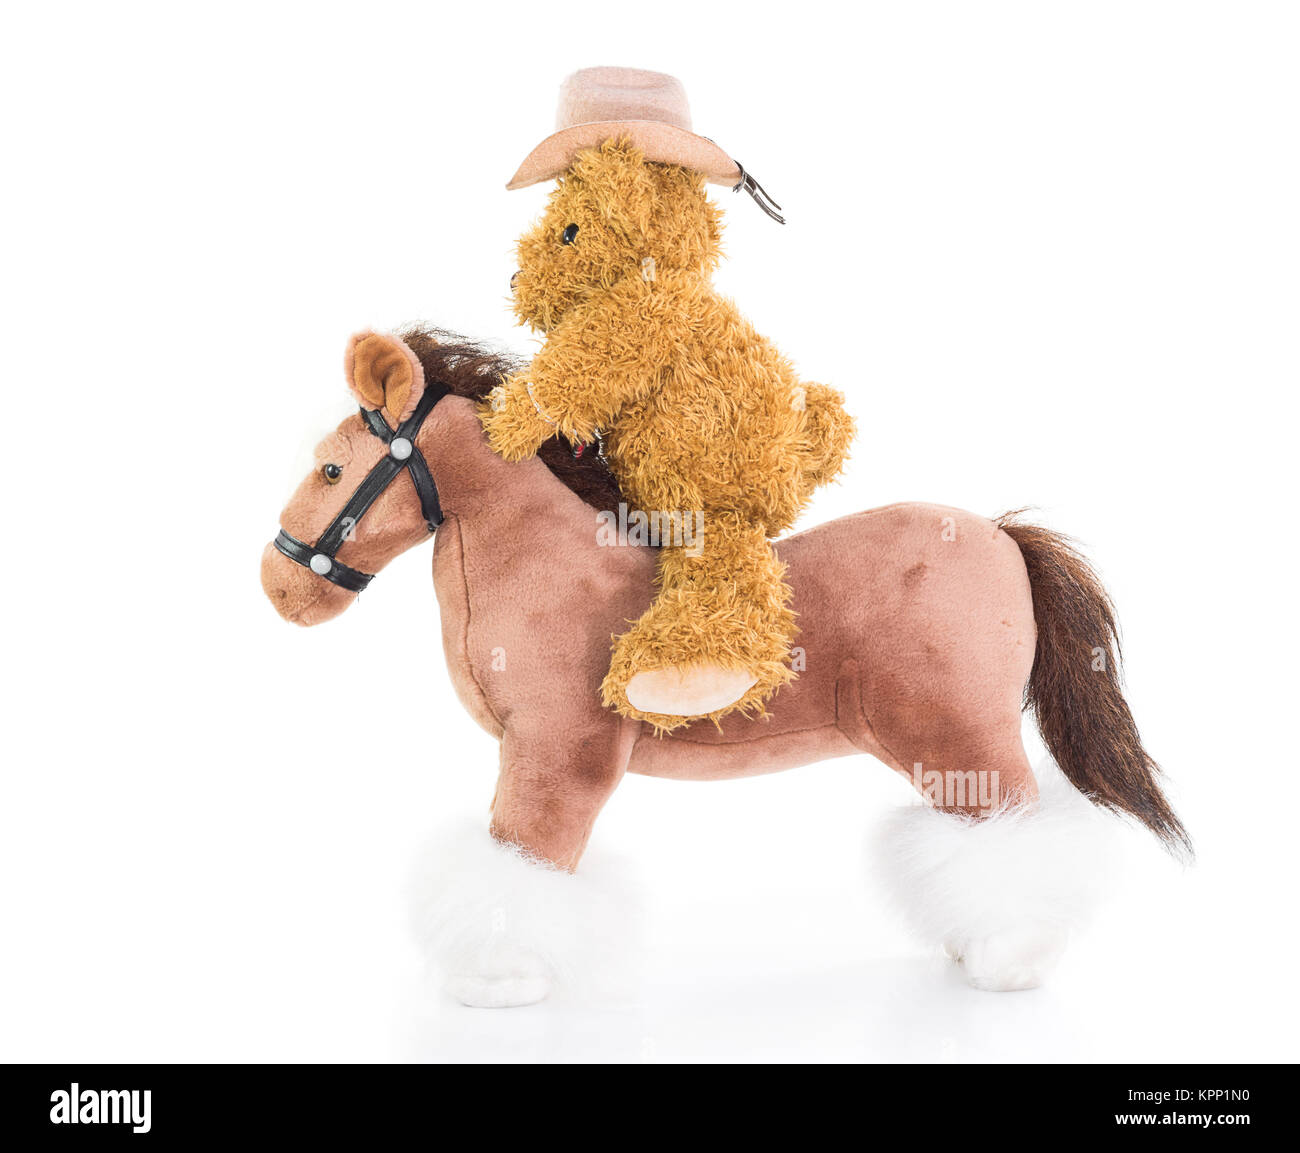 Ours de cow-boy riding a horse Banque D'Images